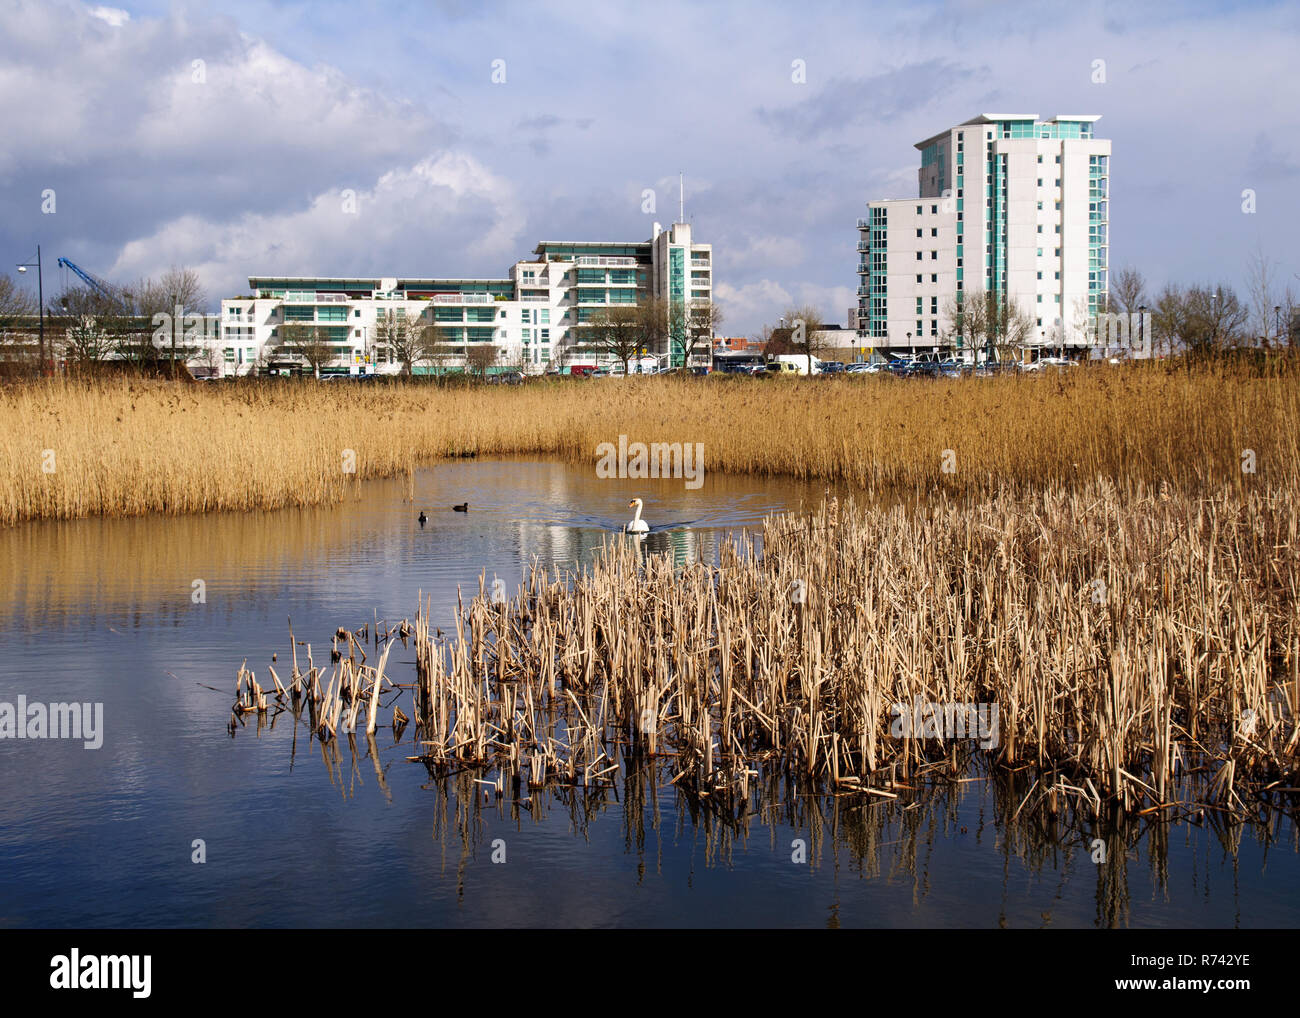 Cardiff, Wales, UK - 17 mars 2013 : les immeubles modernes lieu derrière un petit lac rempli de reed dans la Réserve des zones humides de la baie de Cardiff, dans le cadre d'un ma Banque D'Images